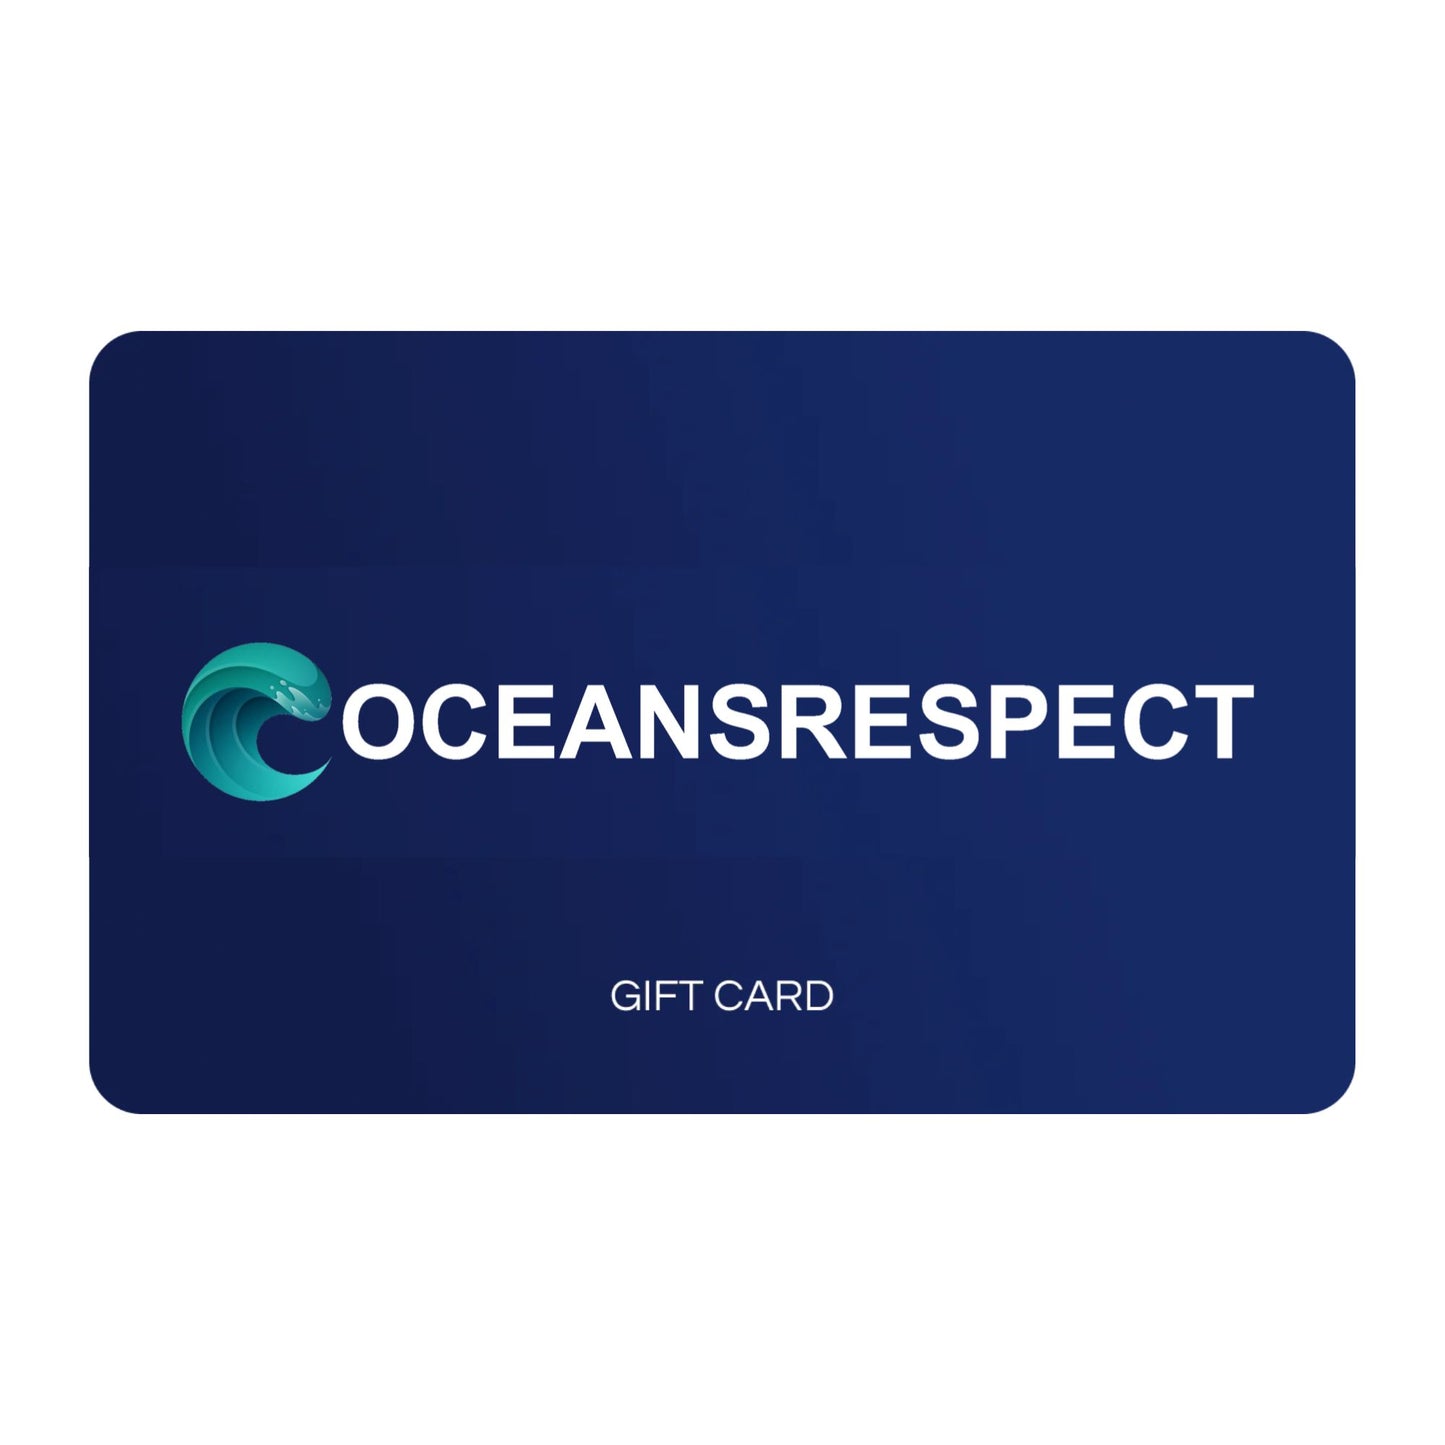 Oceansrespect Gift Card